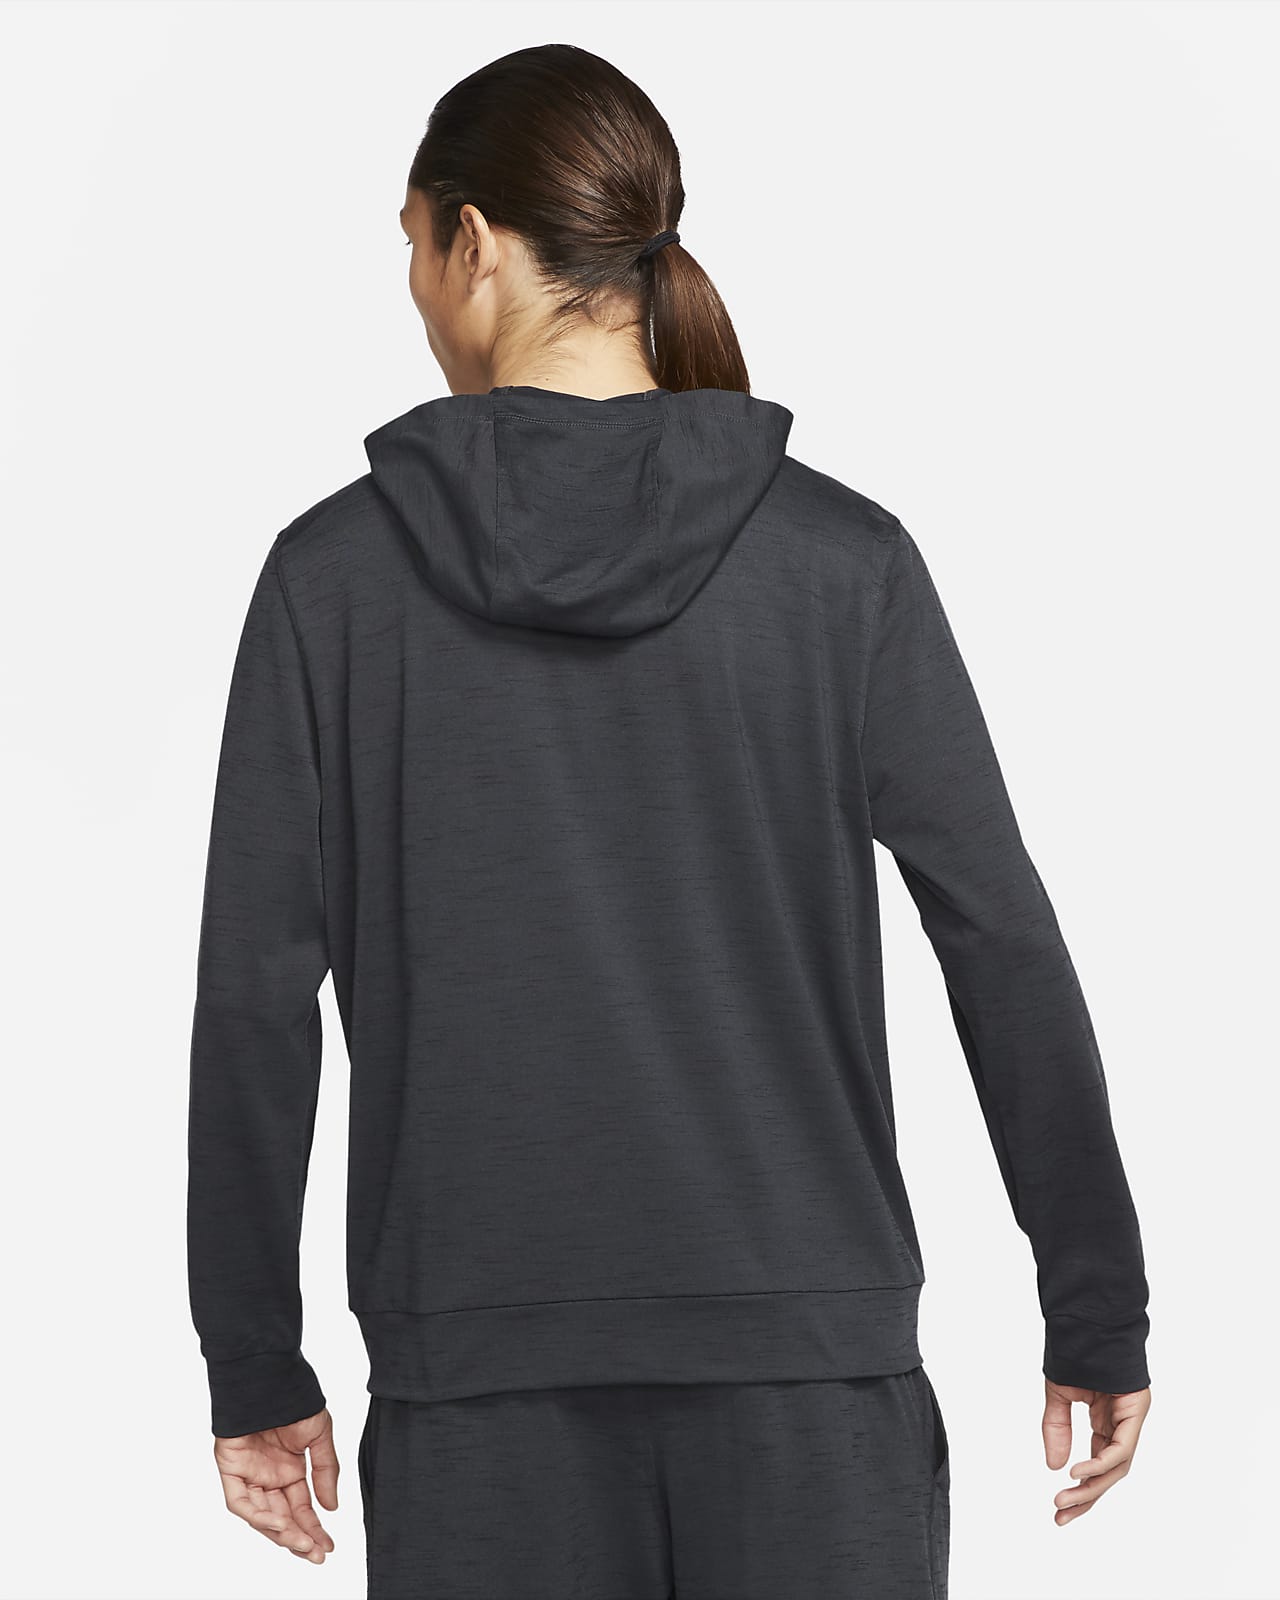 Nike Women's Dri-FIT UV Full-Zip Golf Jackets